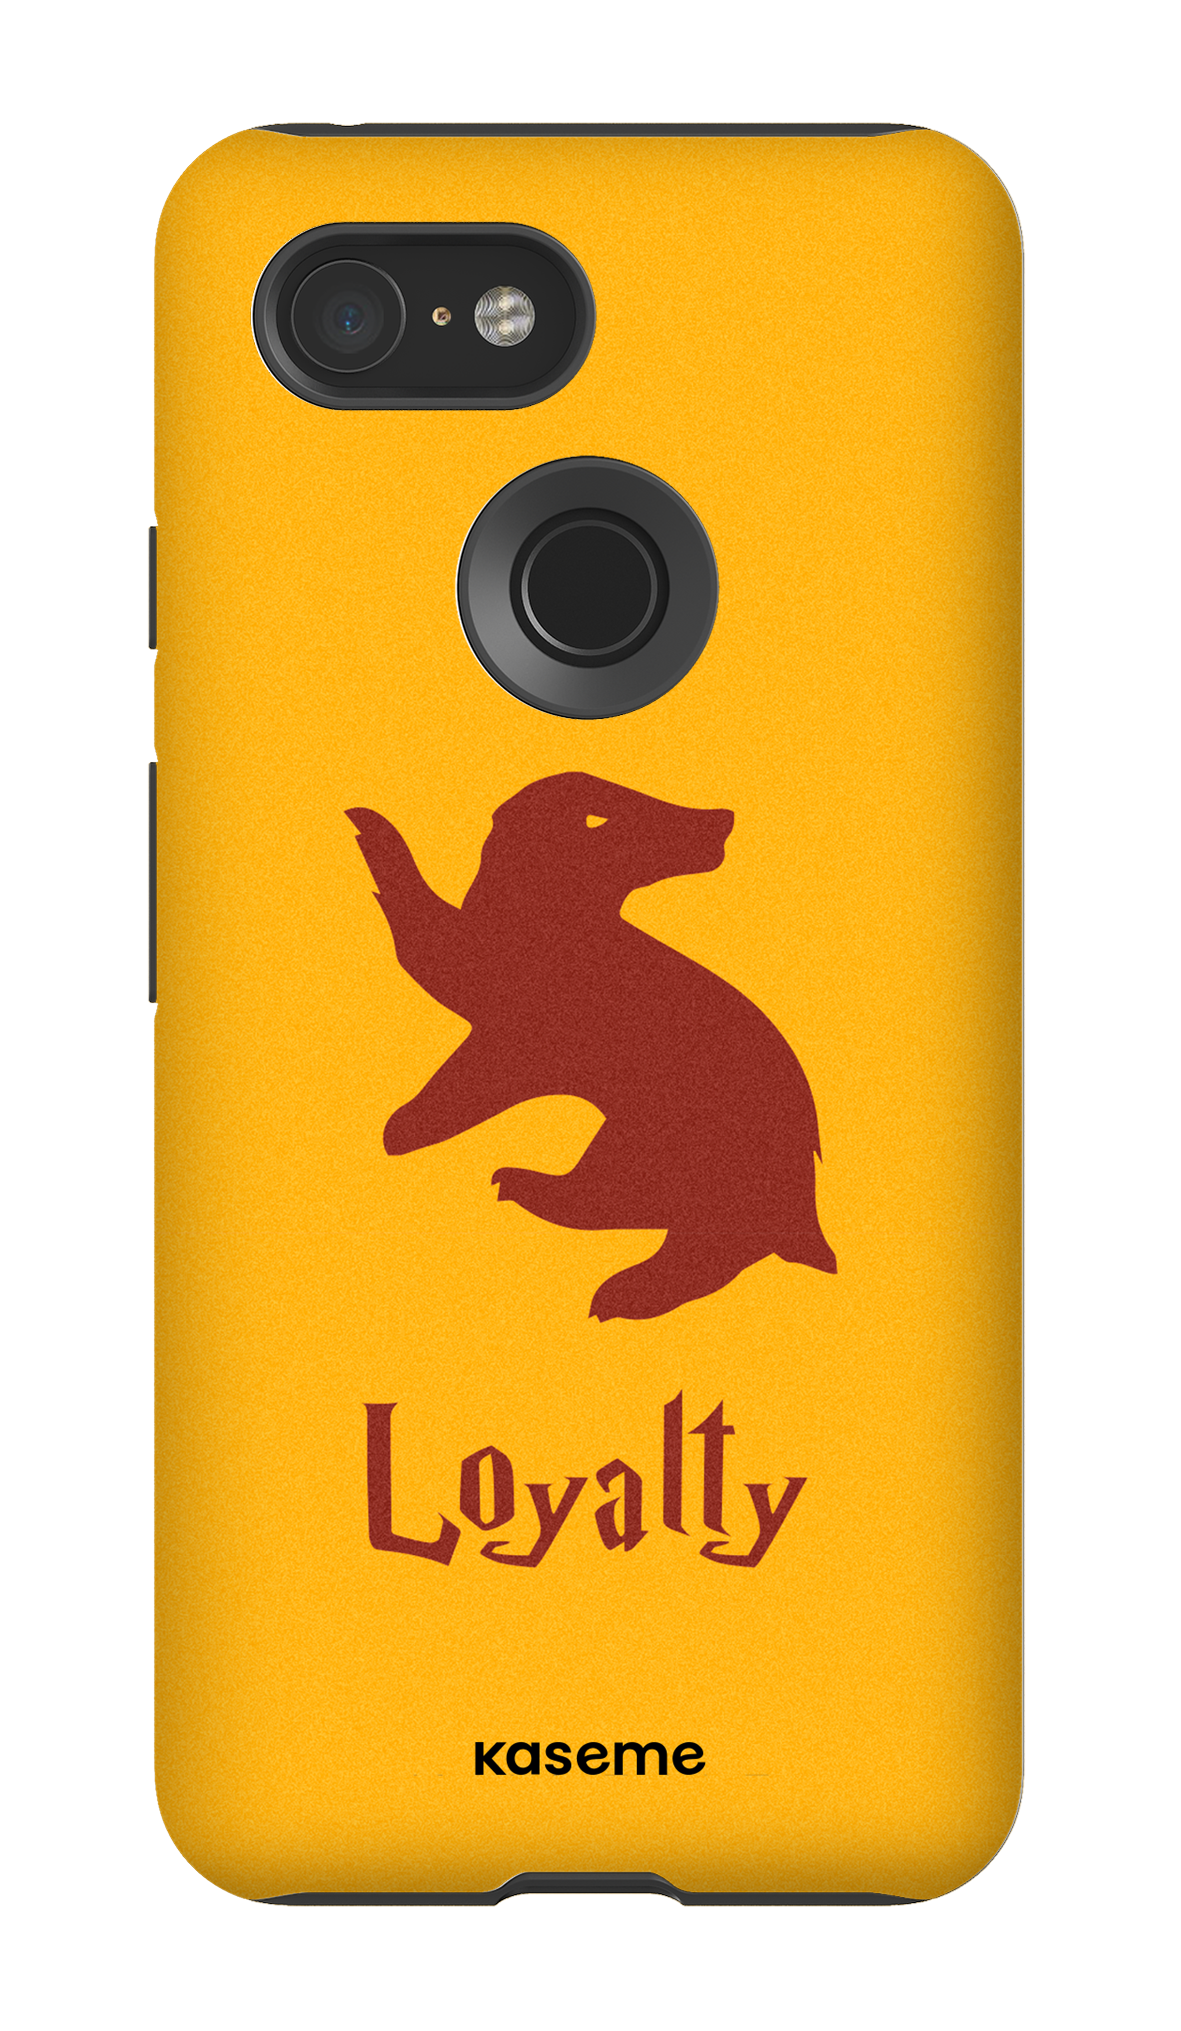 Loyalty - Google Pixel 3